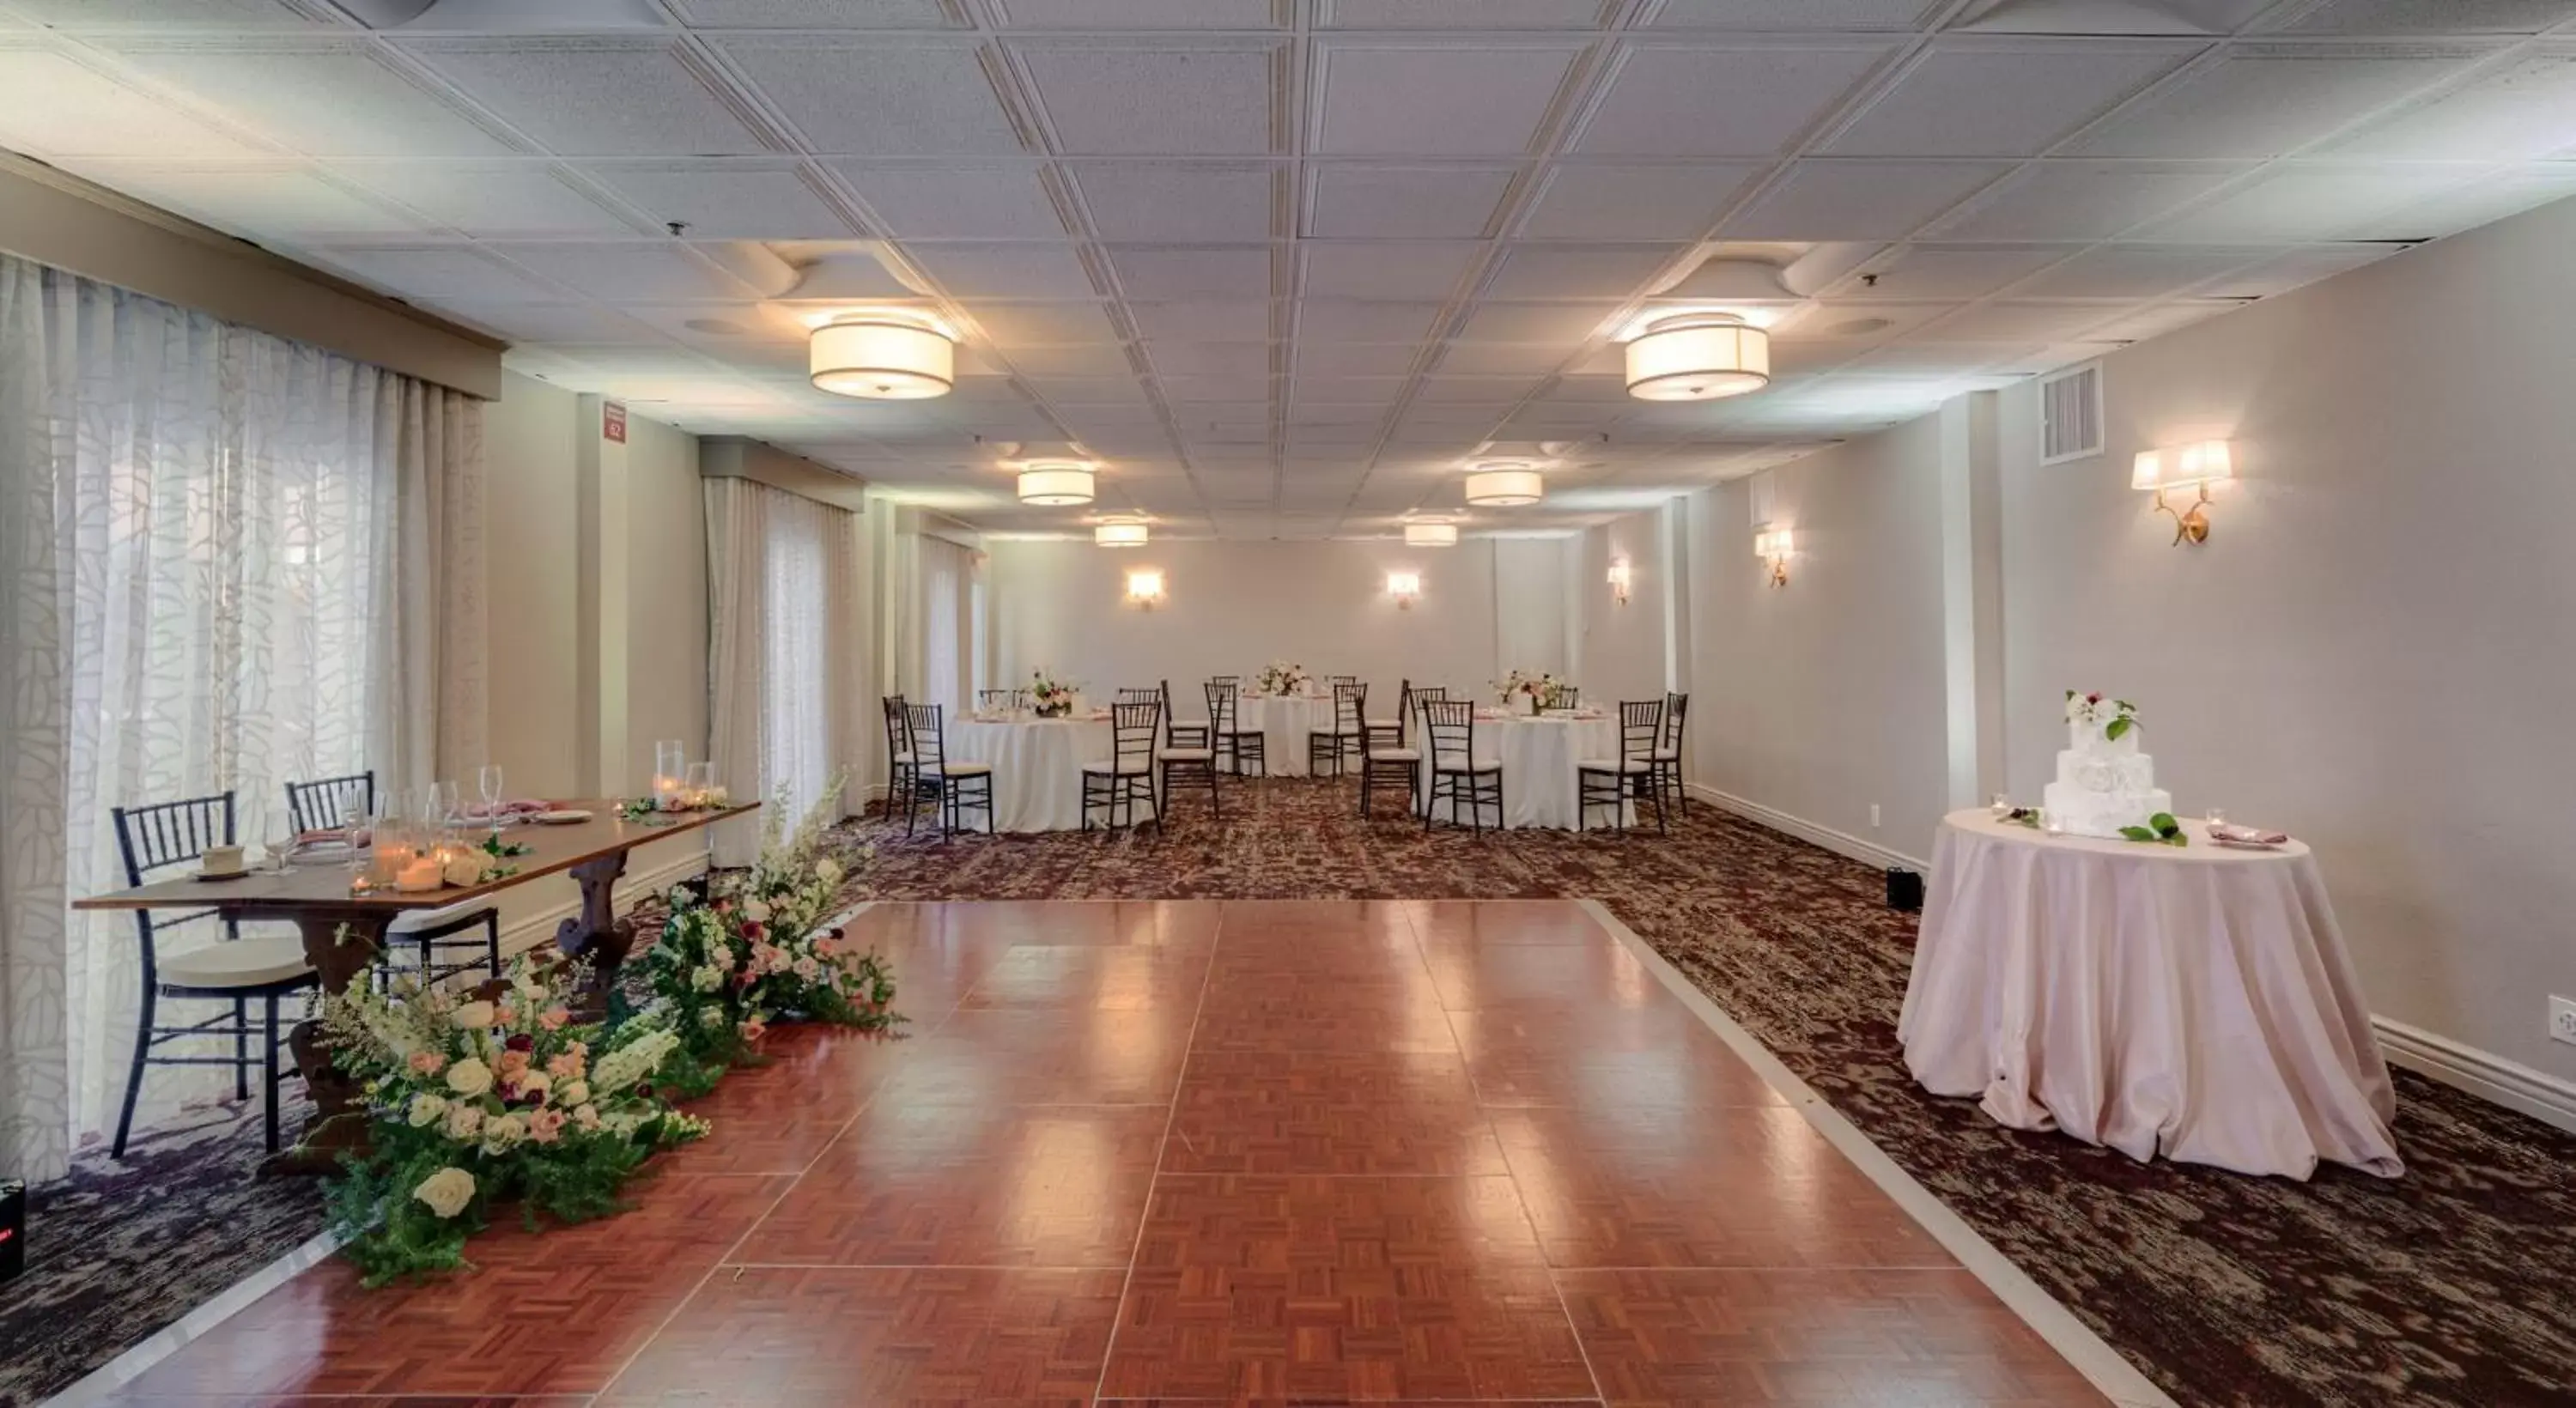 Banquet/Function facilities, Banquet Facilities in Ayres Hotel Costa Mesa Newport Beach